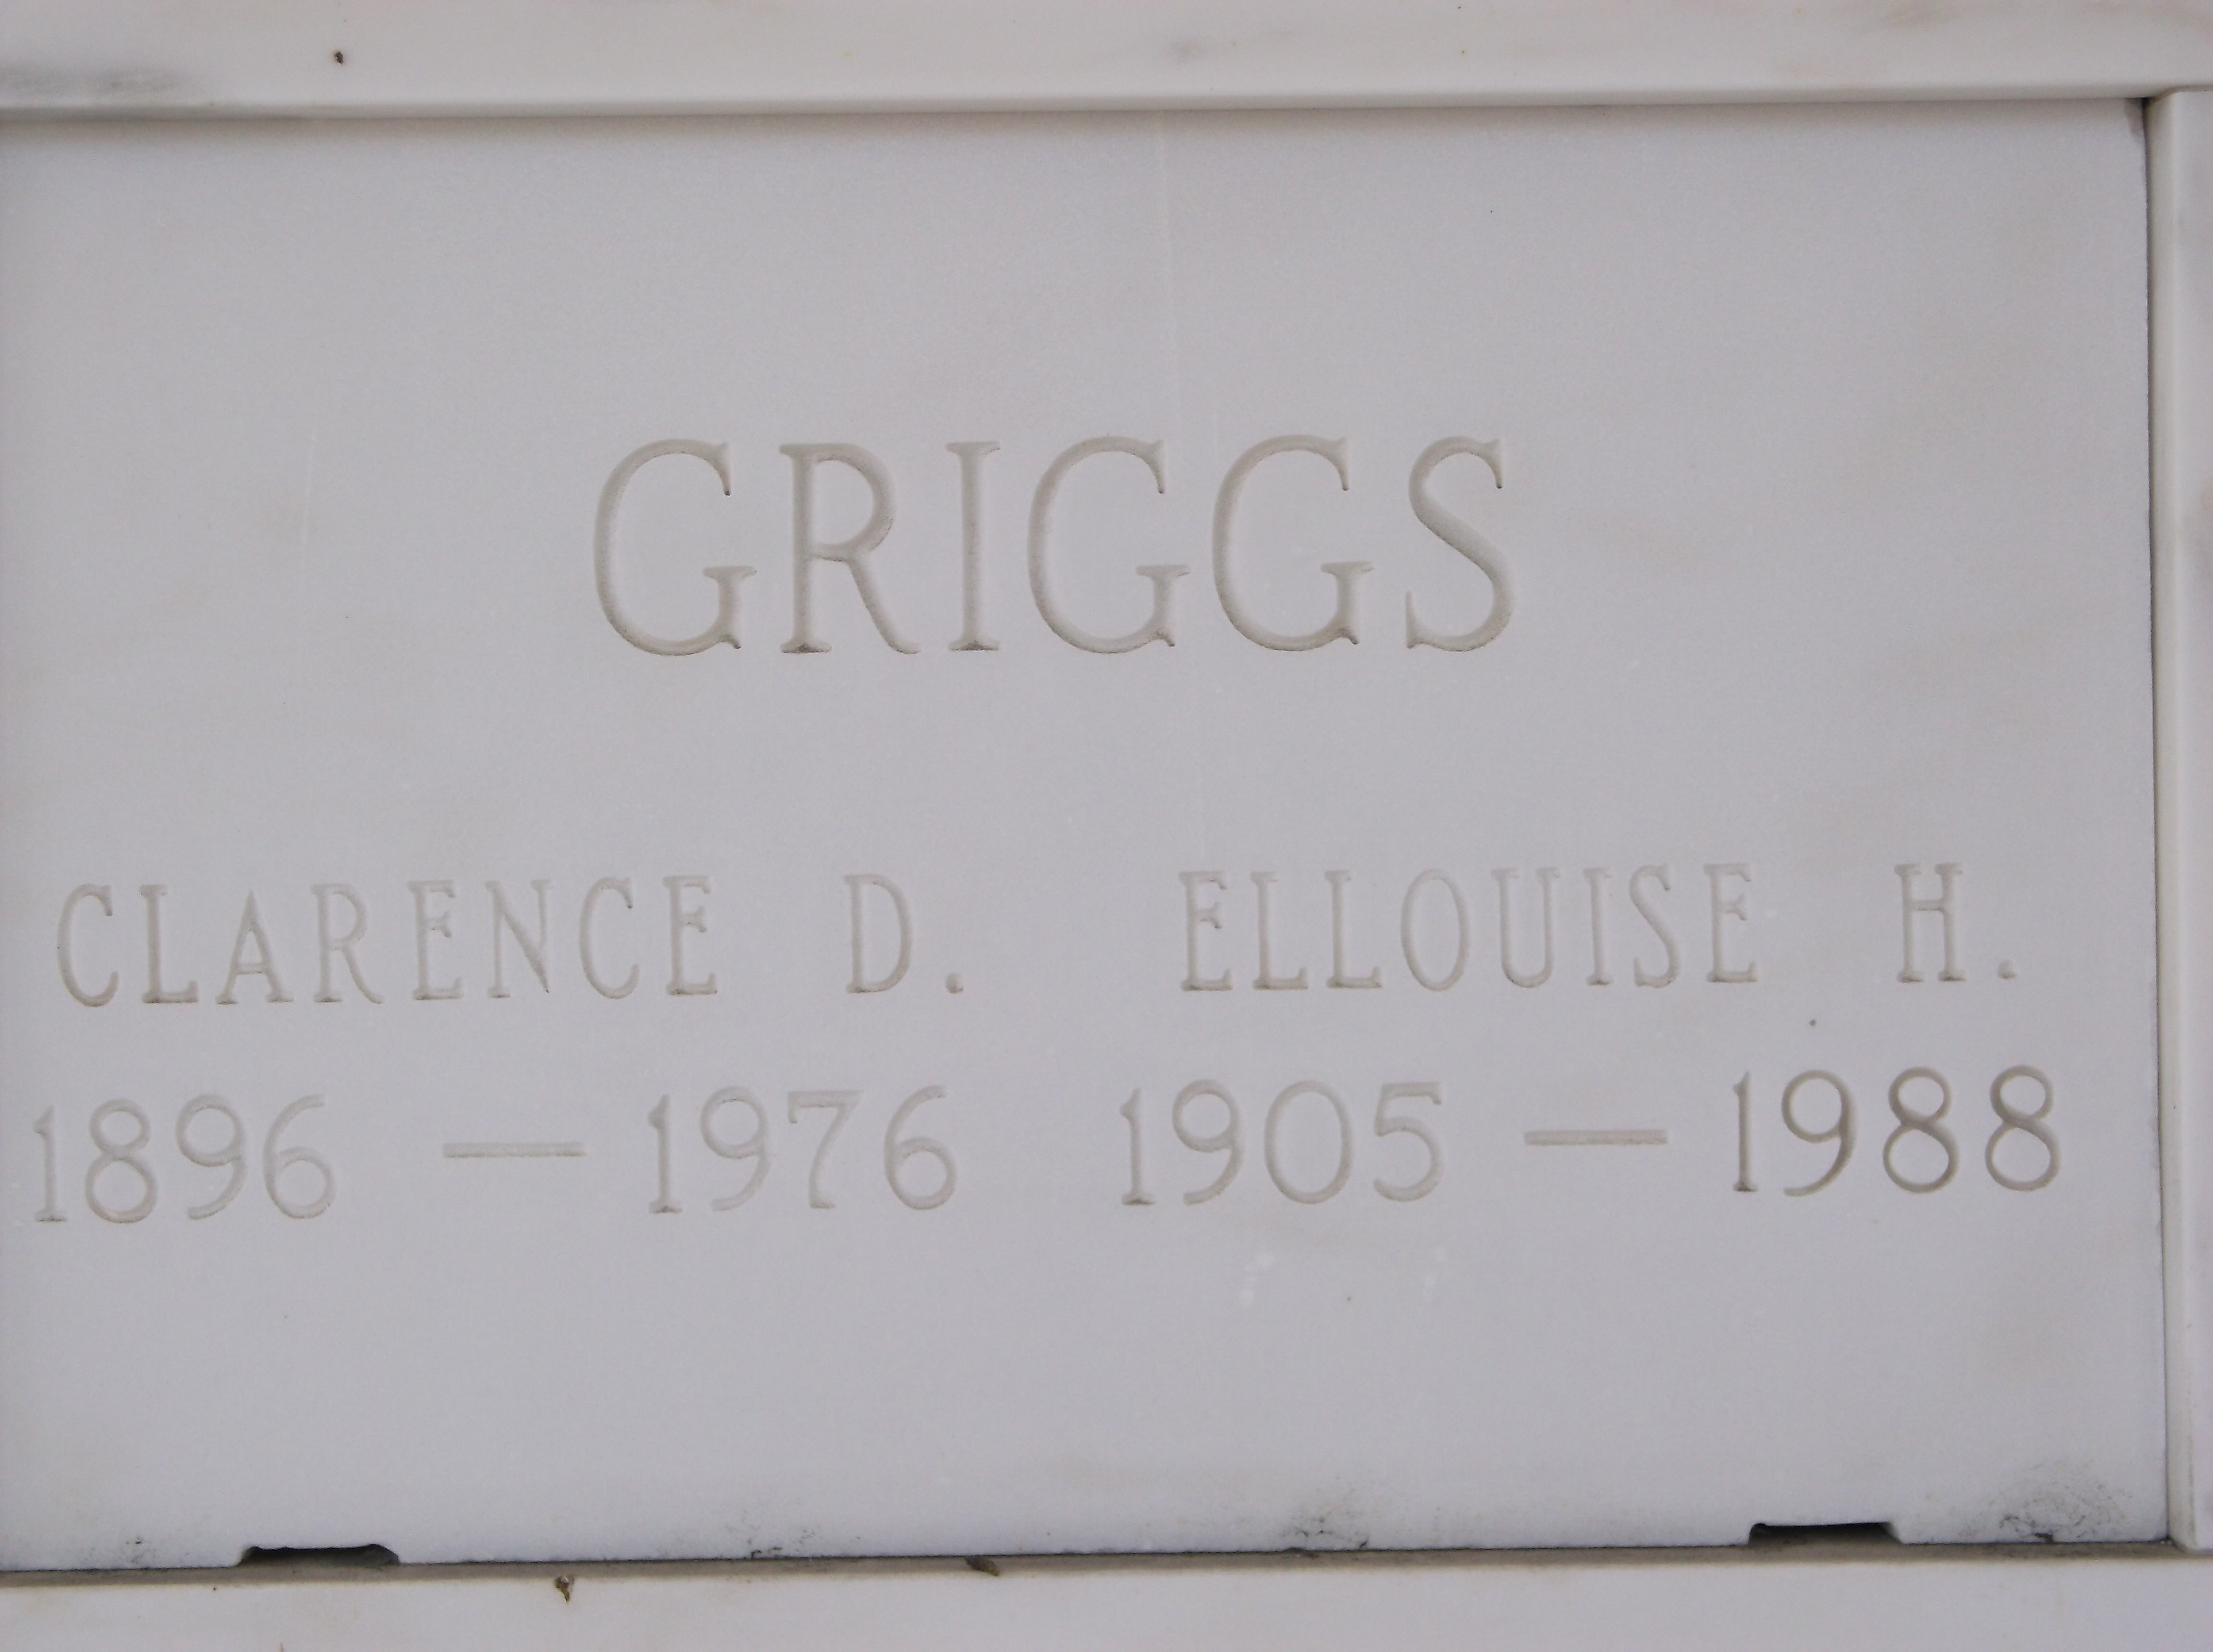 Ellouise H Griggs